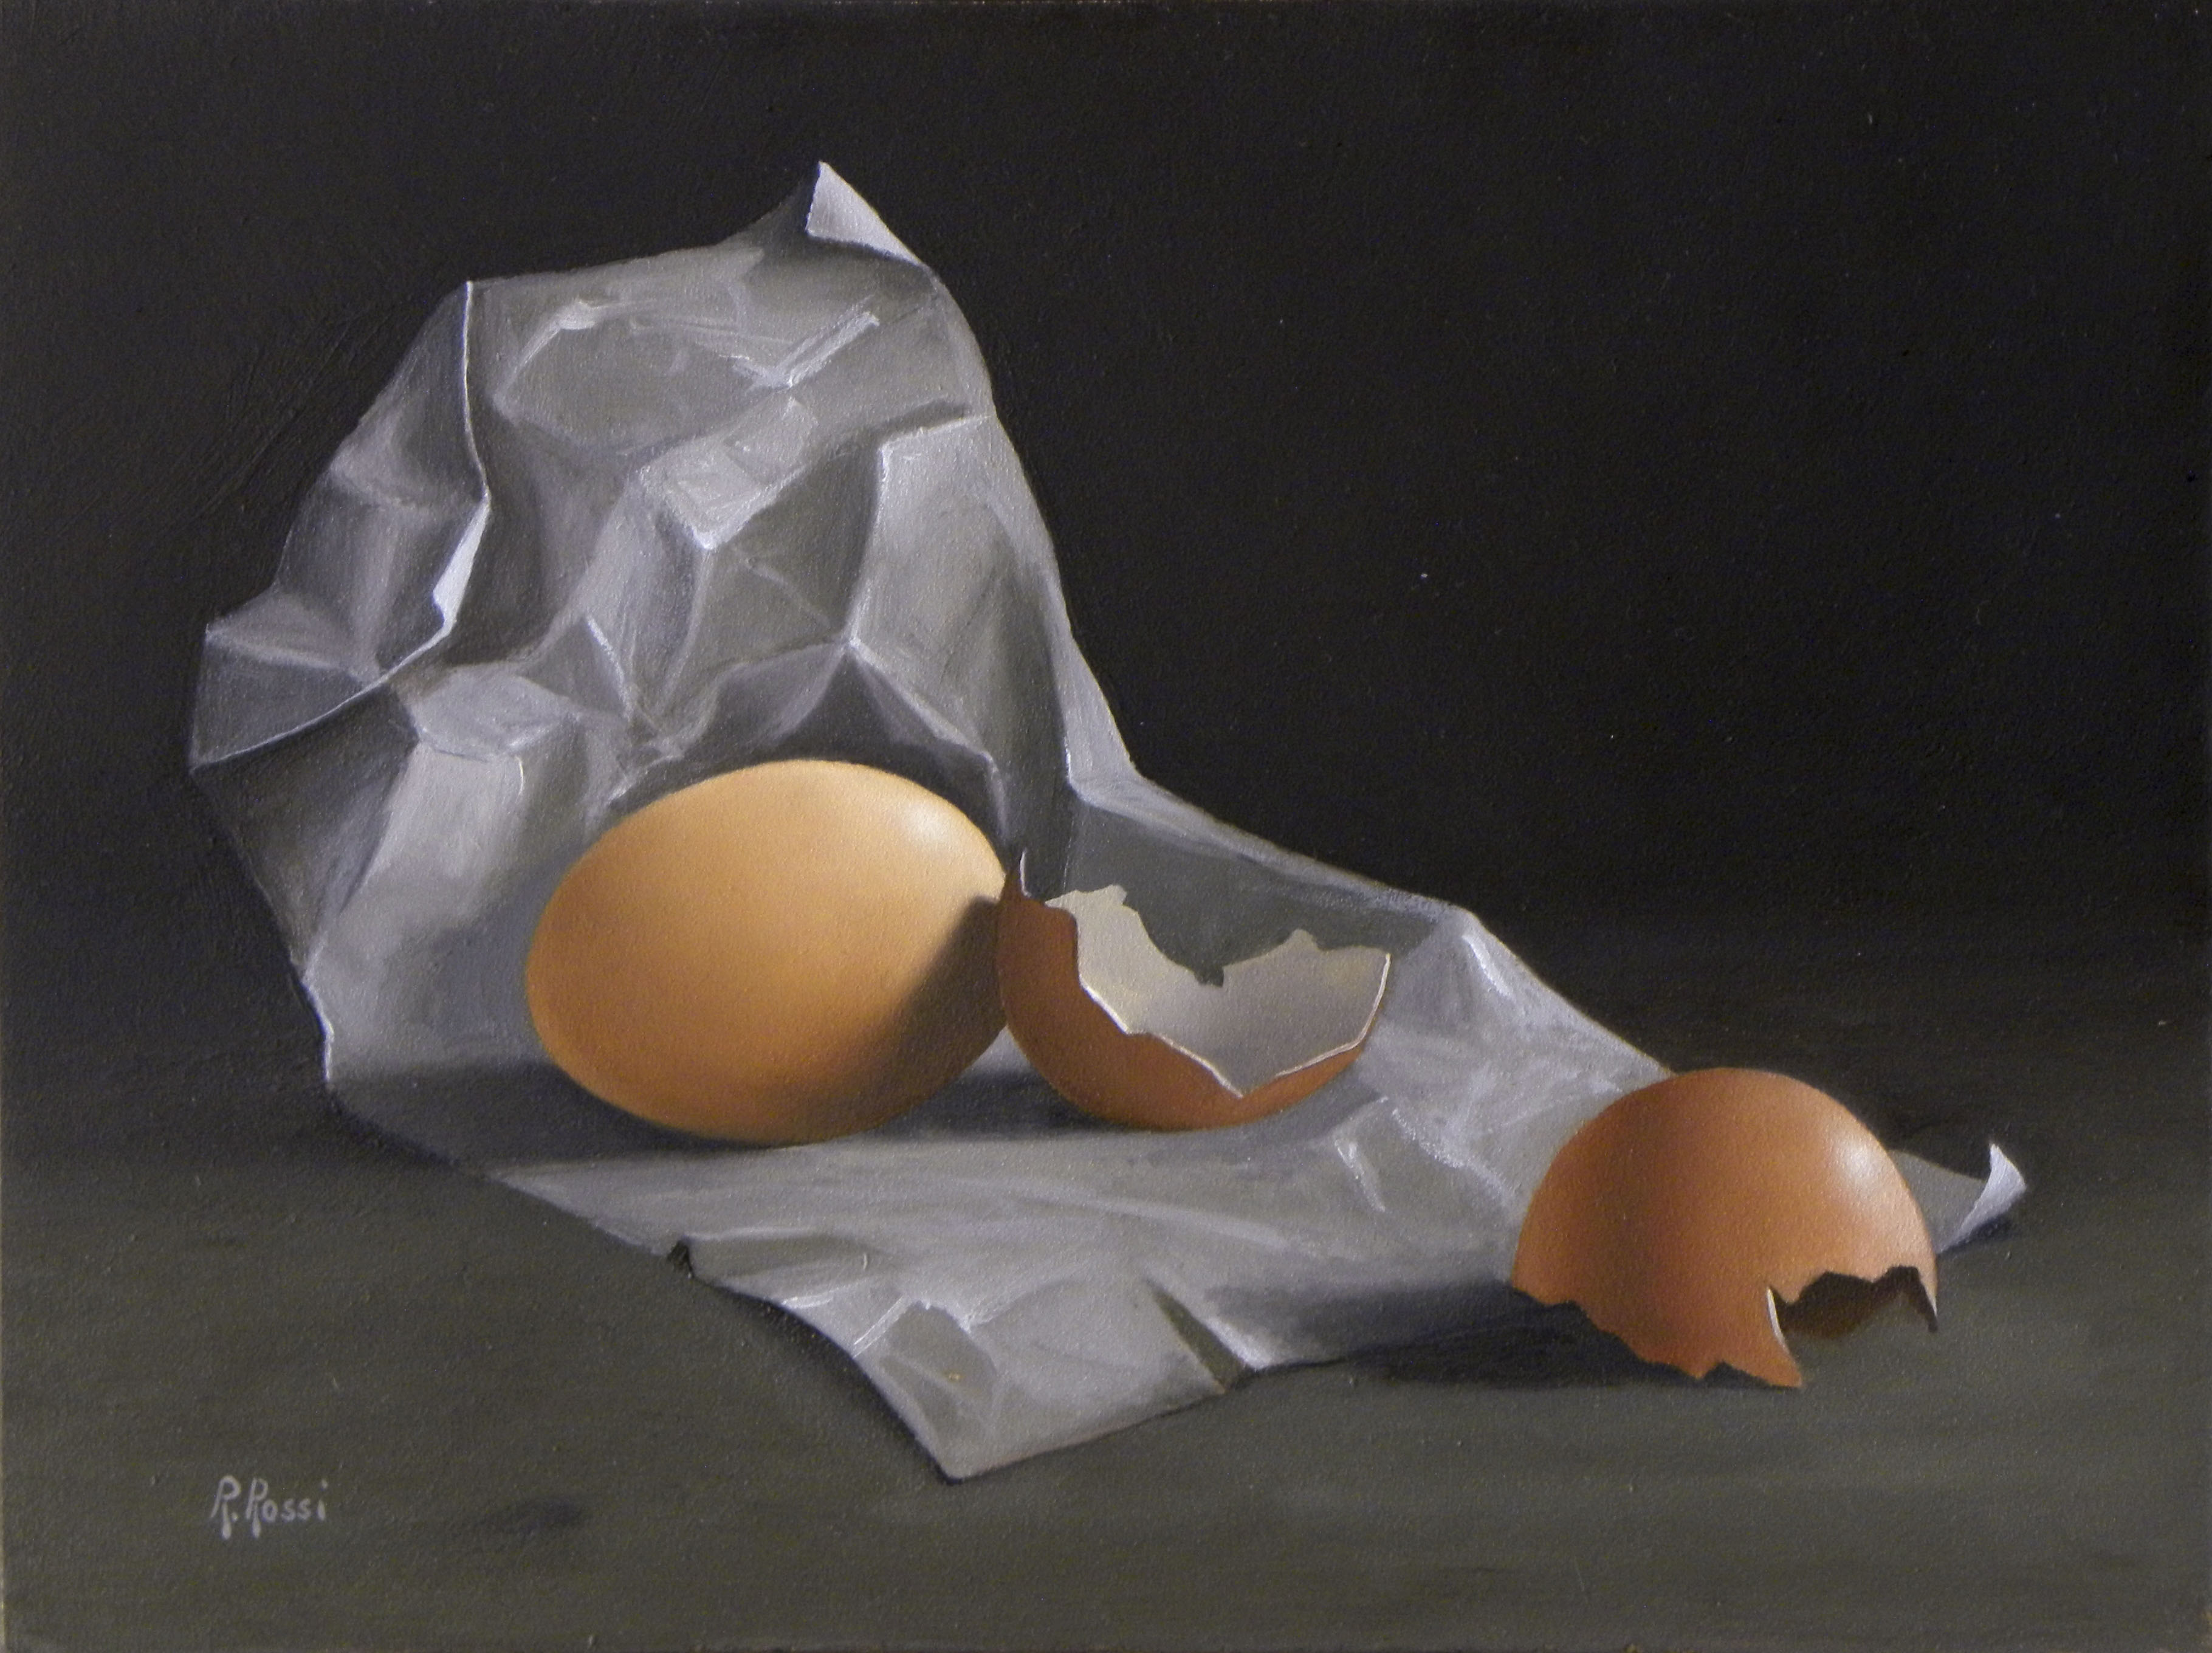 2015 roberta rossi – uovo e guscio su cartoccio – olio su tavola – 18 x 24